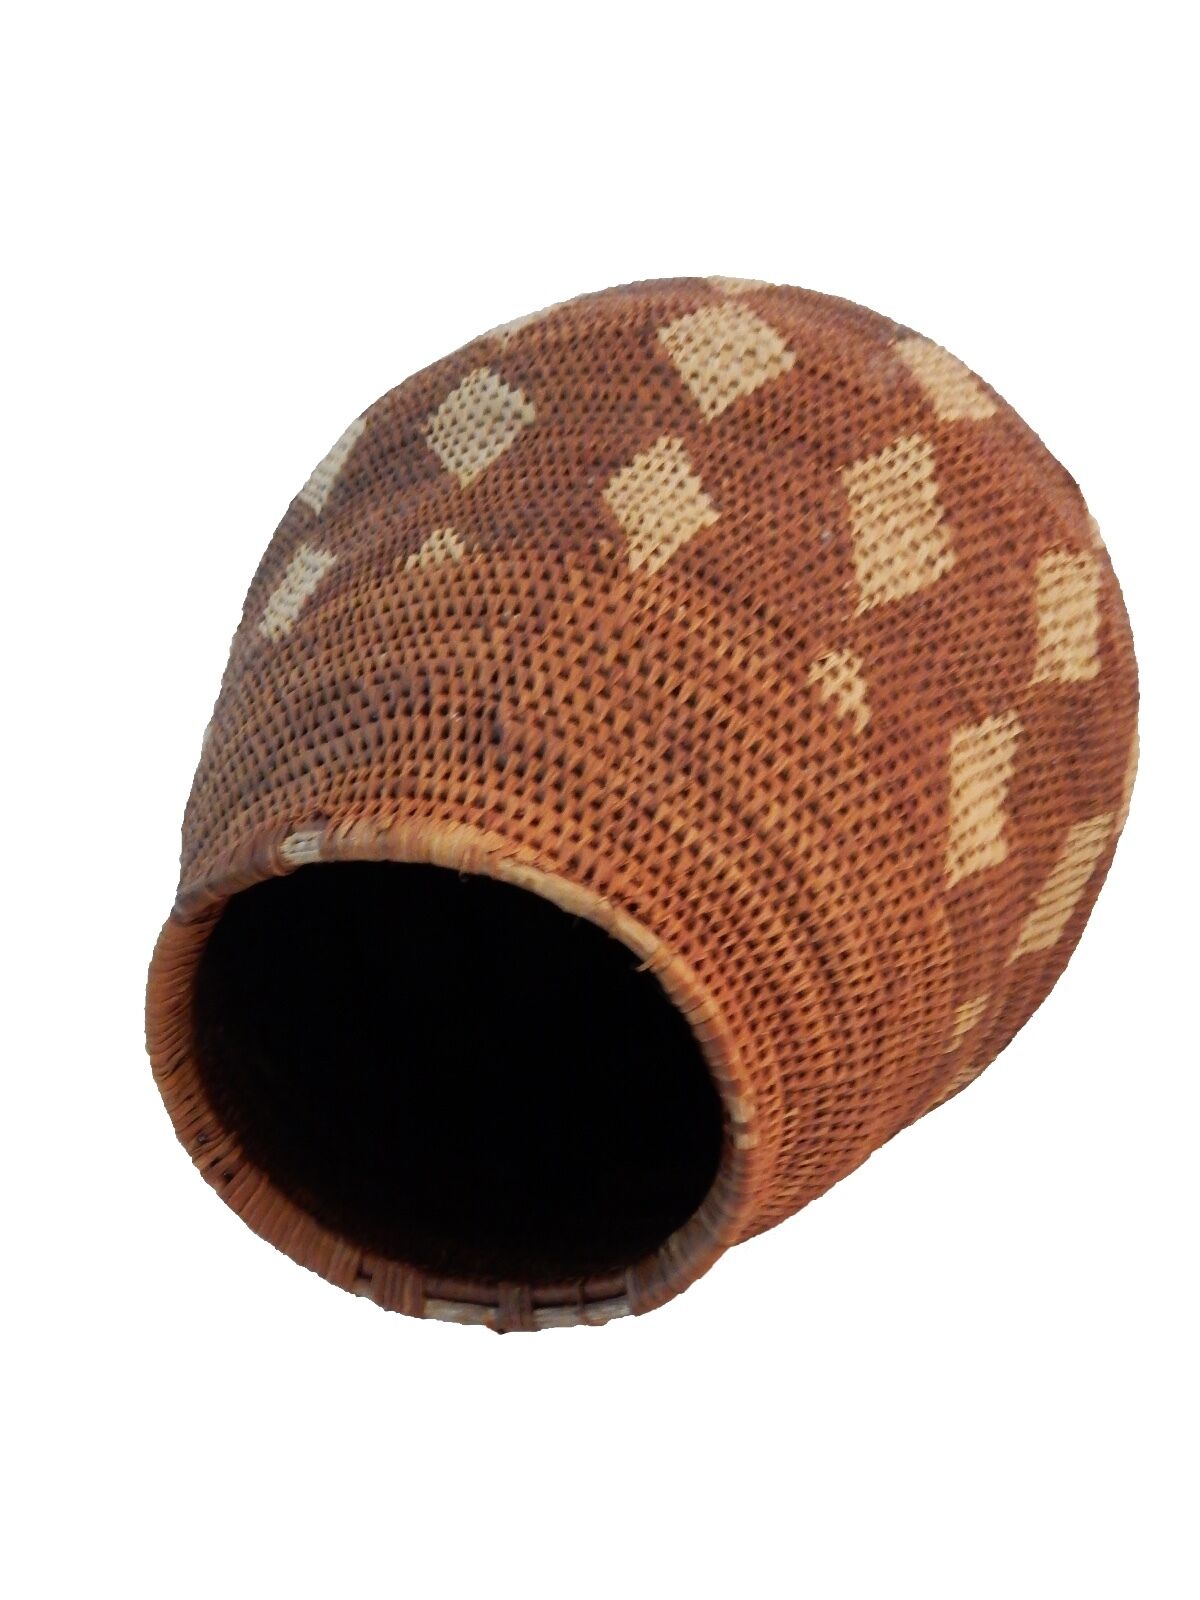 #ABV1 Large Vintage Botswana Handmade  African Basket Primitives Folk Art 14.5"h